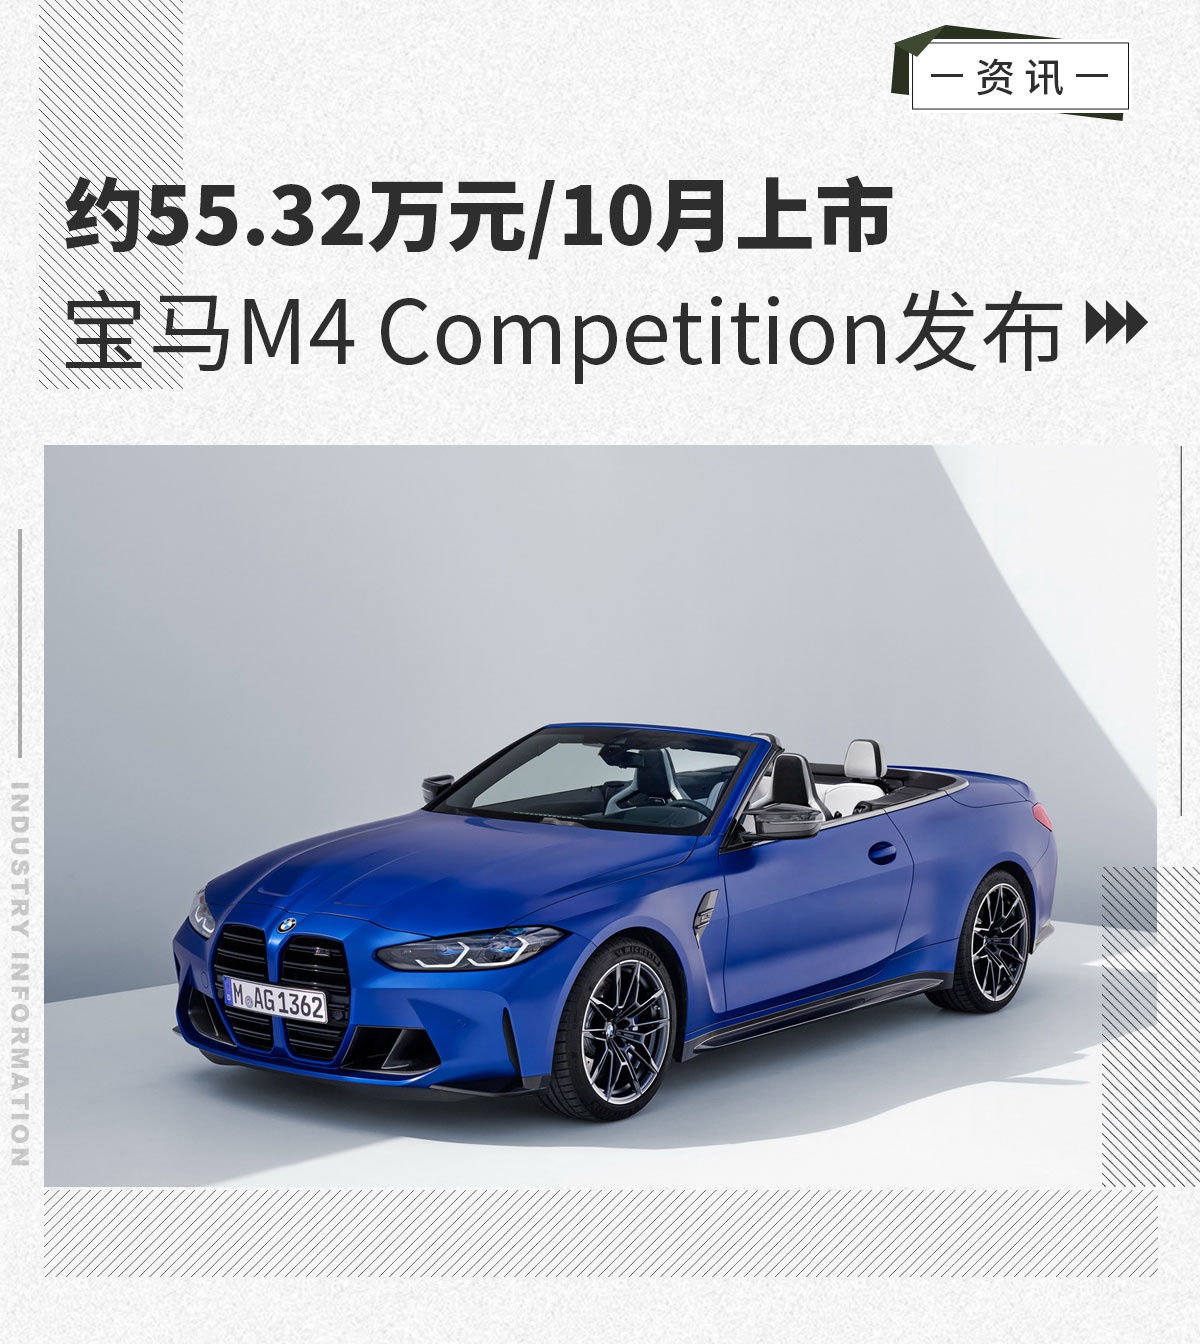 宝马M4 Competition发布 约55.32万元/10月上市